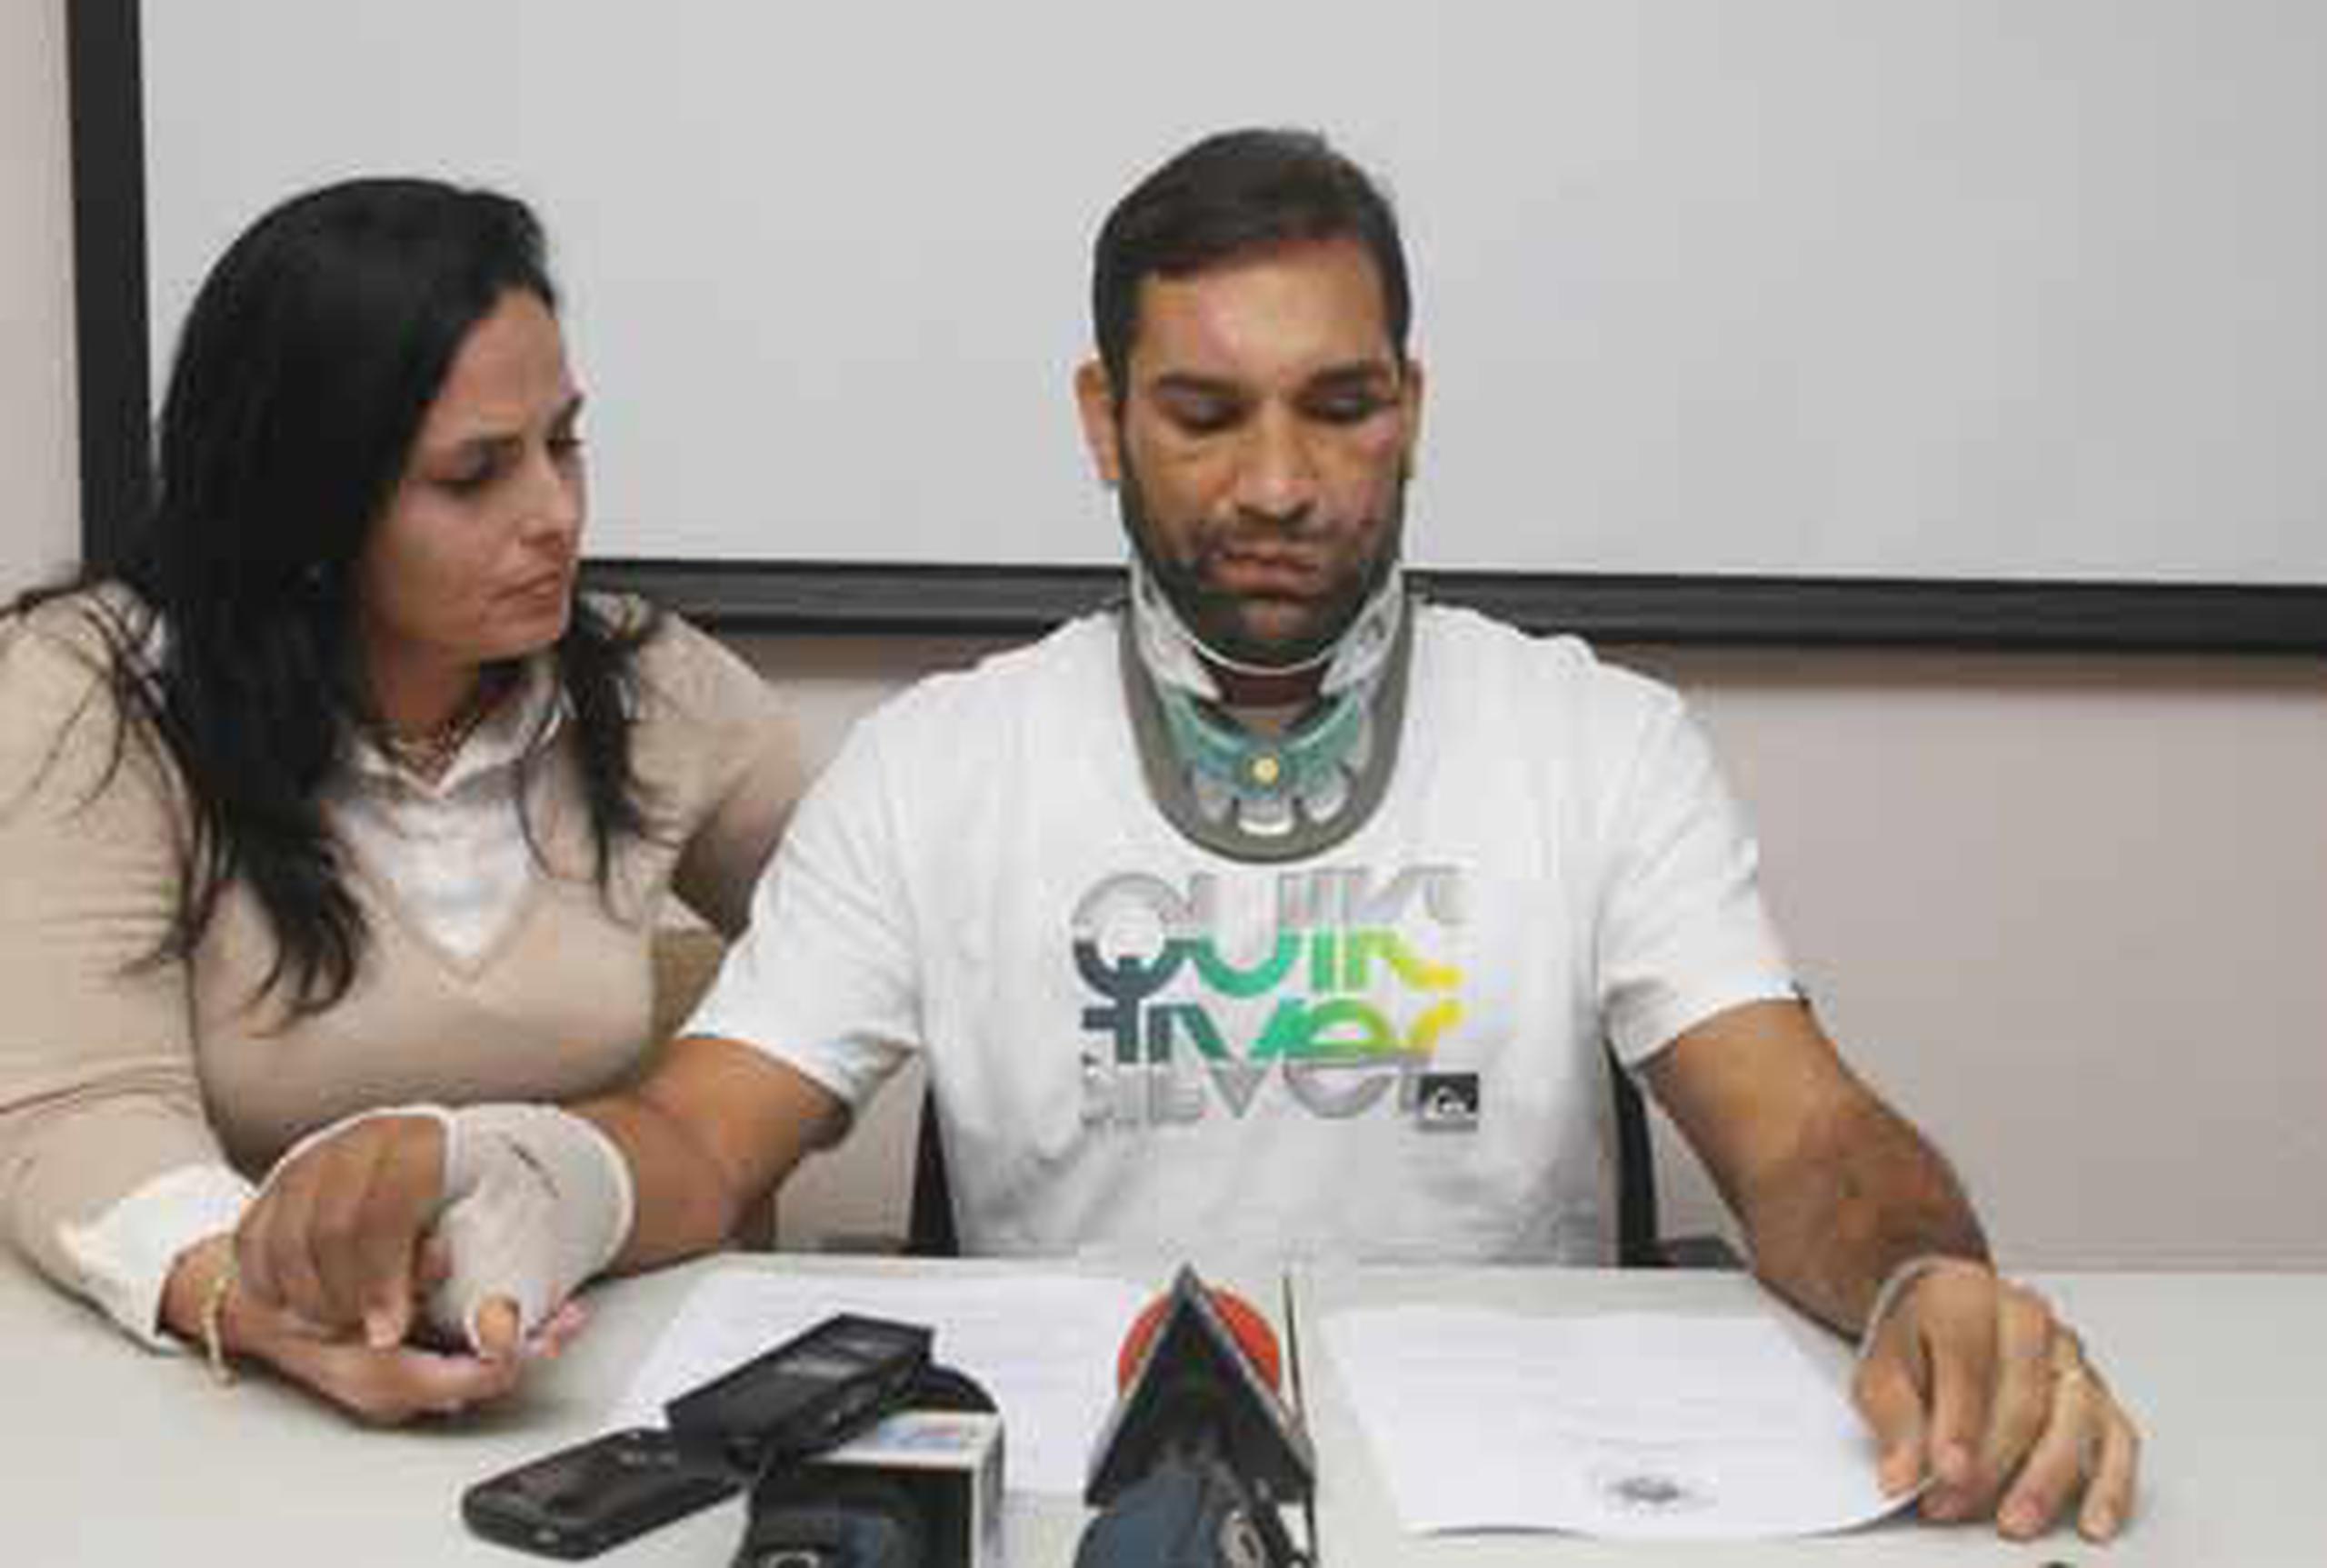 El representante José Luis Rivera Guerra recibió varias heridas al ser atropellado el 2 de marzo pasado mientras corría bicicleta. ( Primera Hora/Archivo/ Vanessa Serra Díaz)